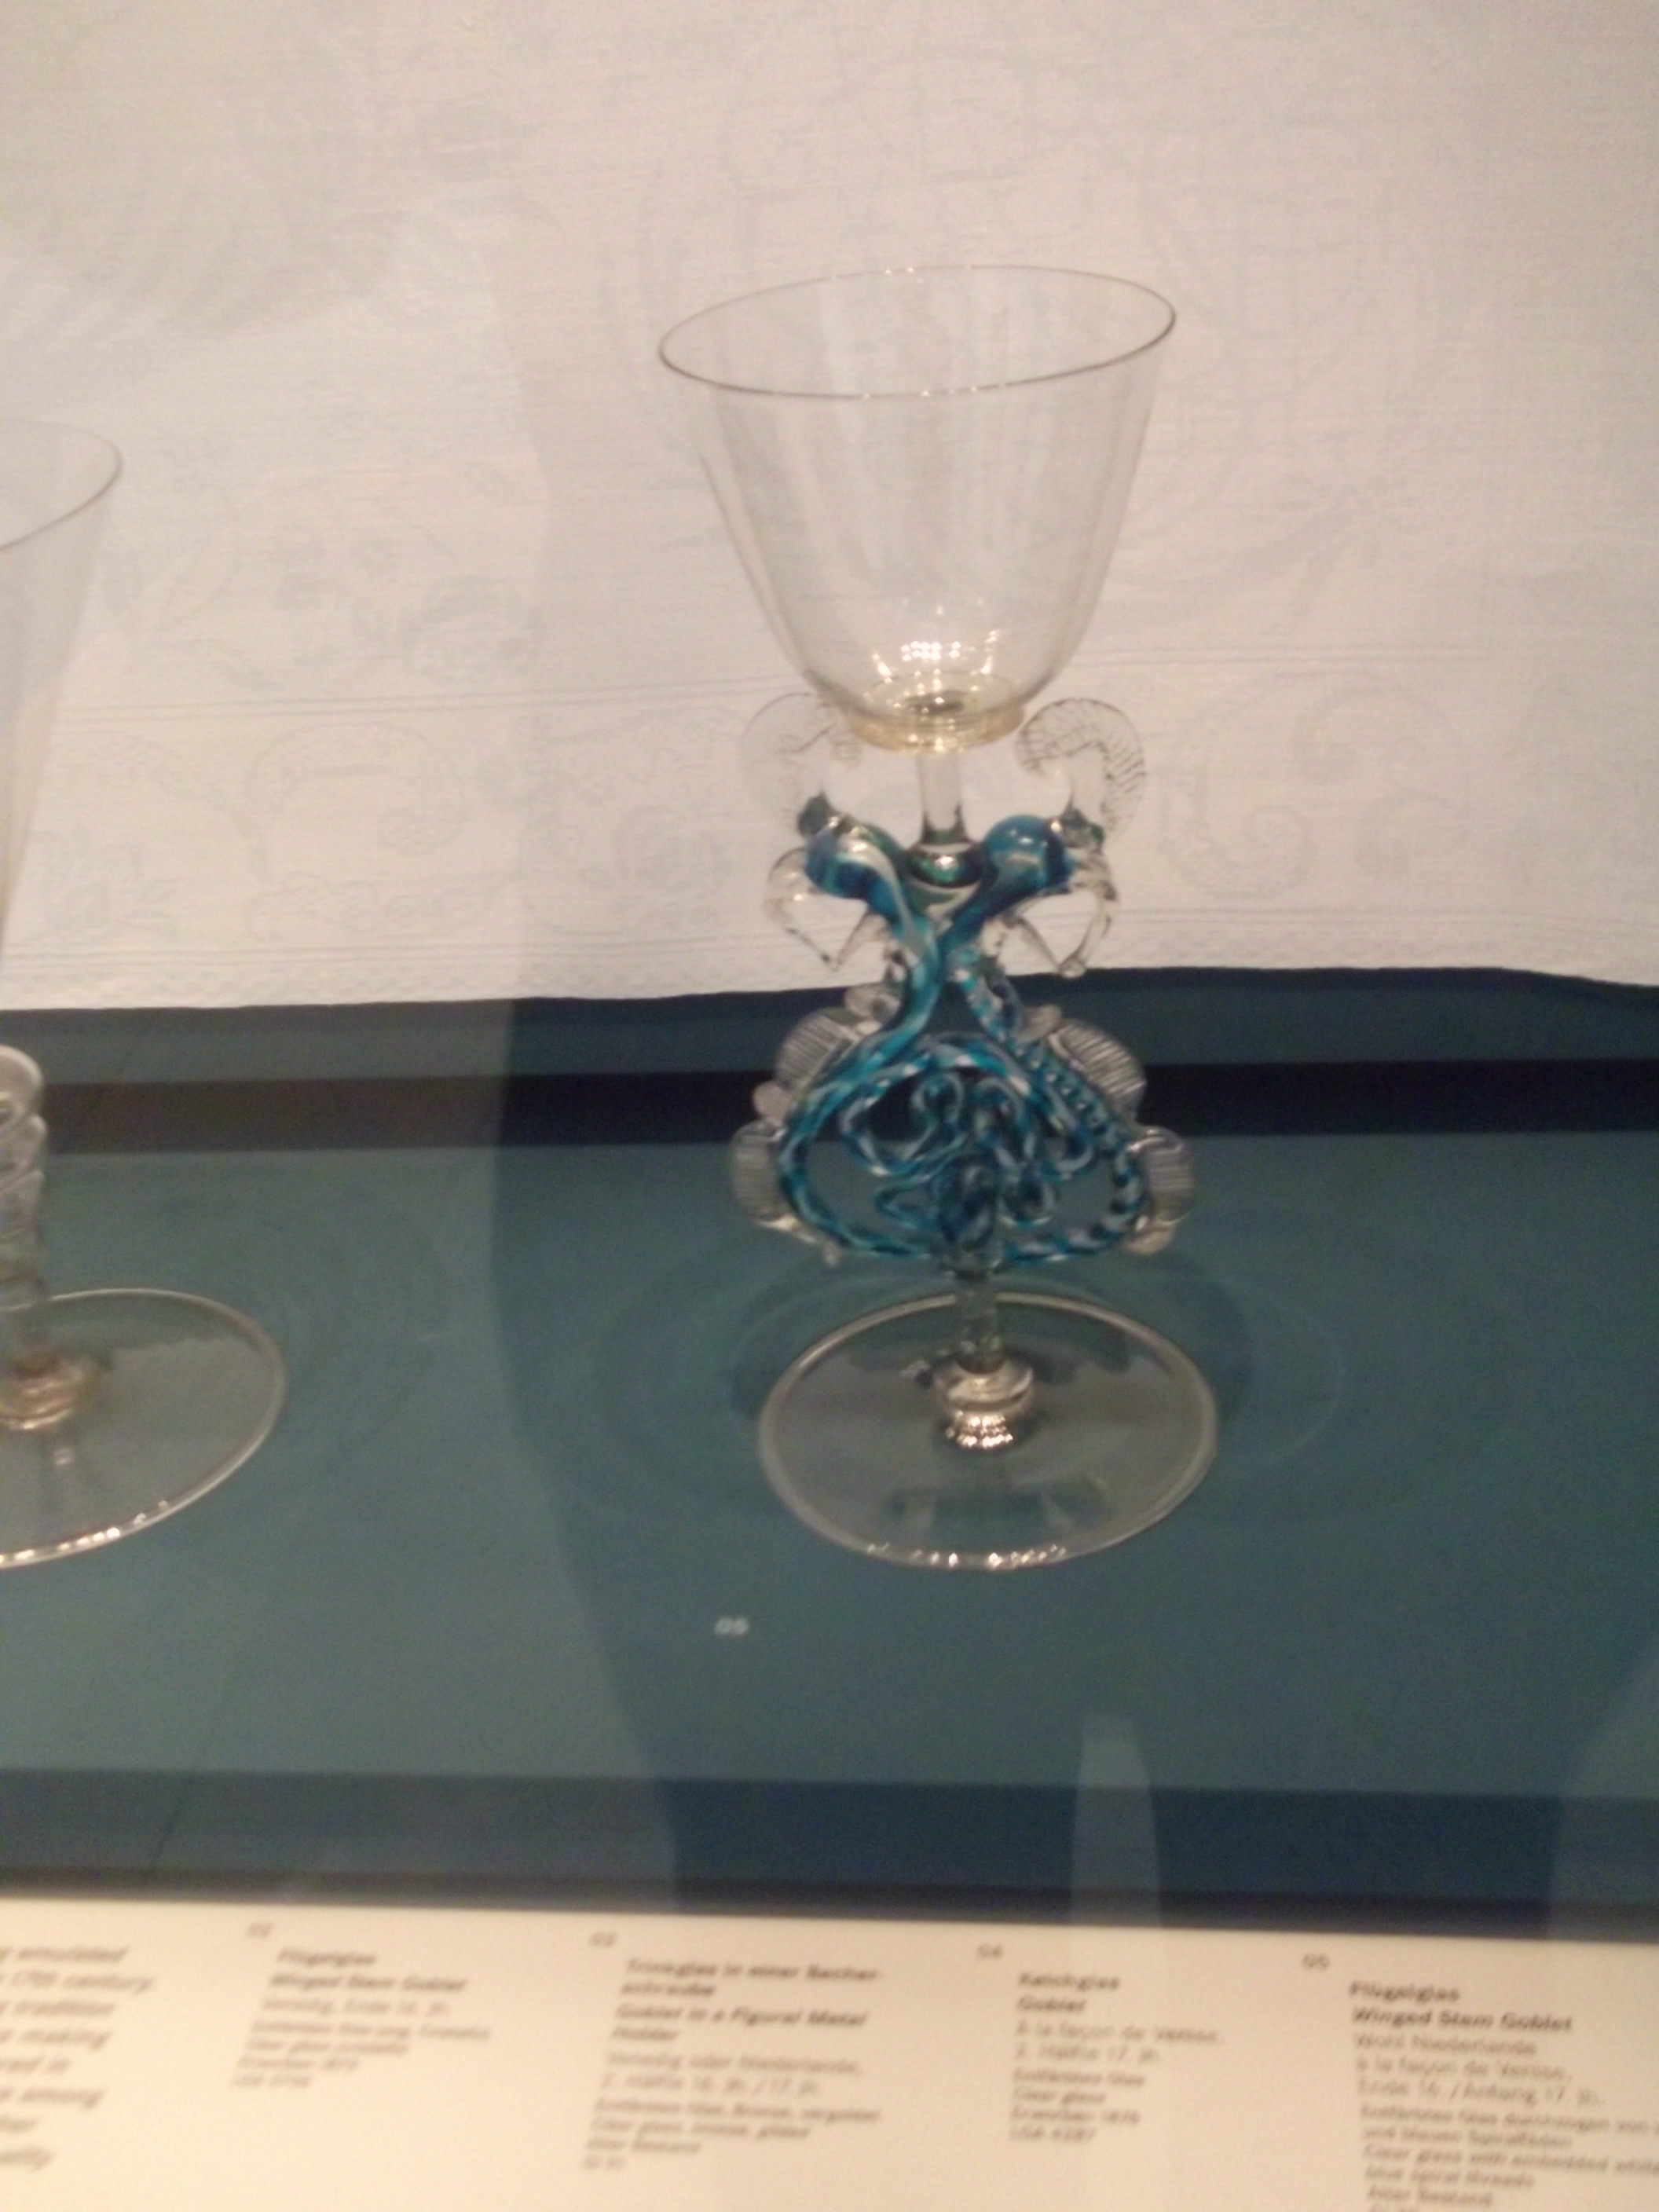 niederl&auml;ndisches Fl&uuml;gelglas nach venezianischem Vorbild 16.17. Jahrhundert